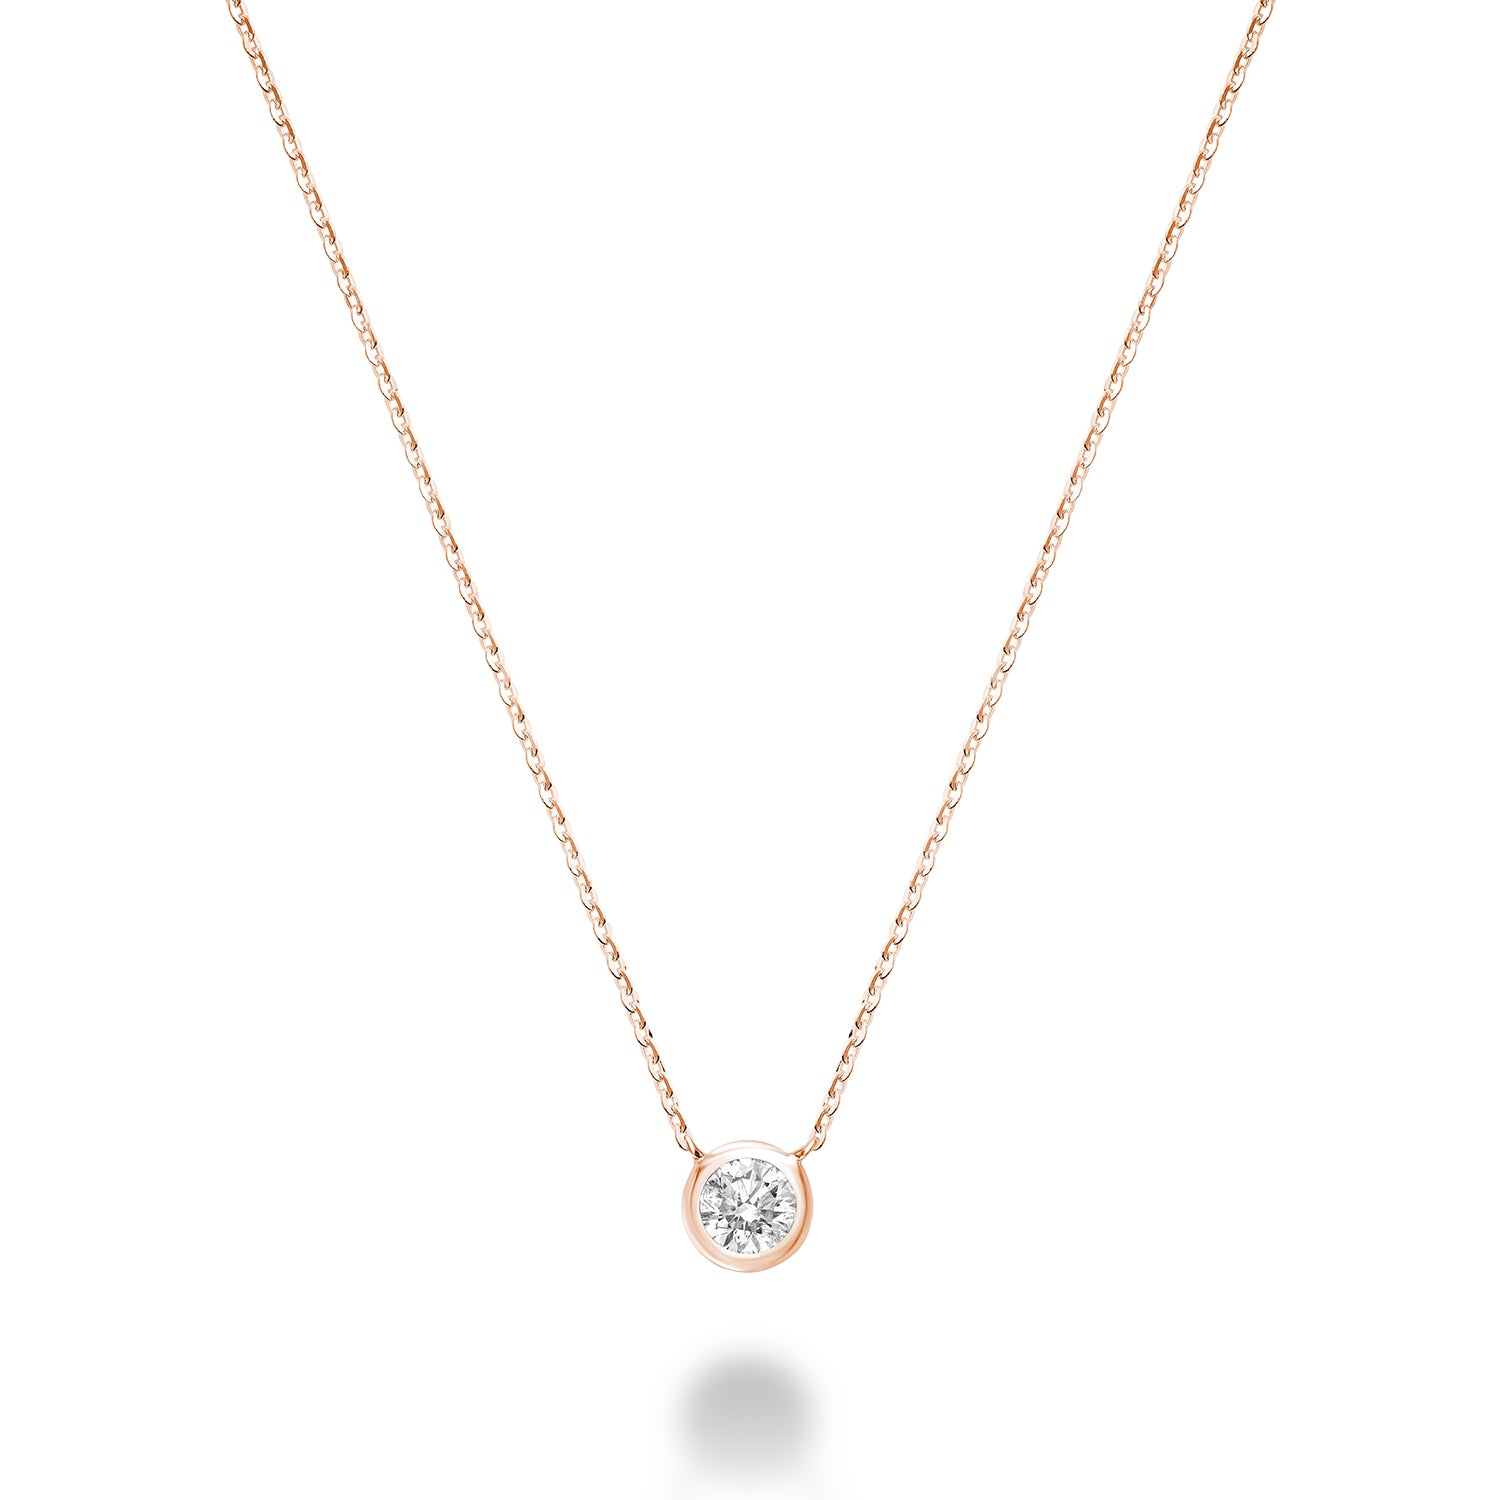 Hemsleys Collection 14K Round Diamond Bezel Set Necklace